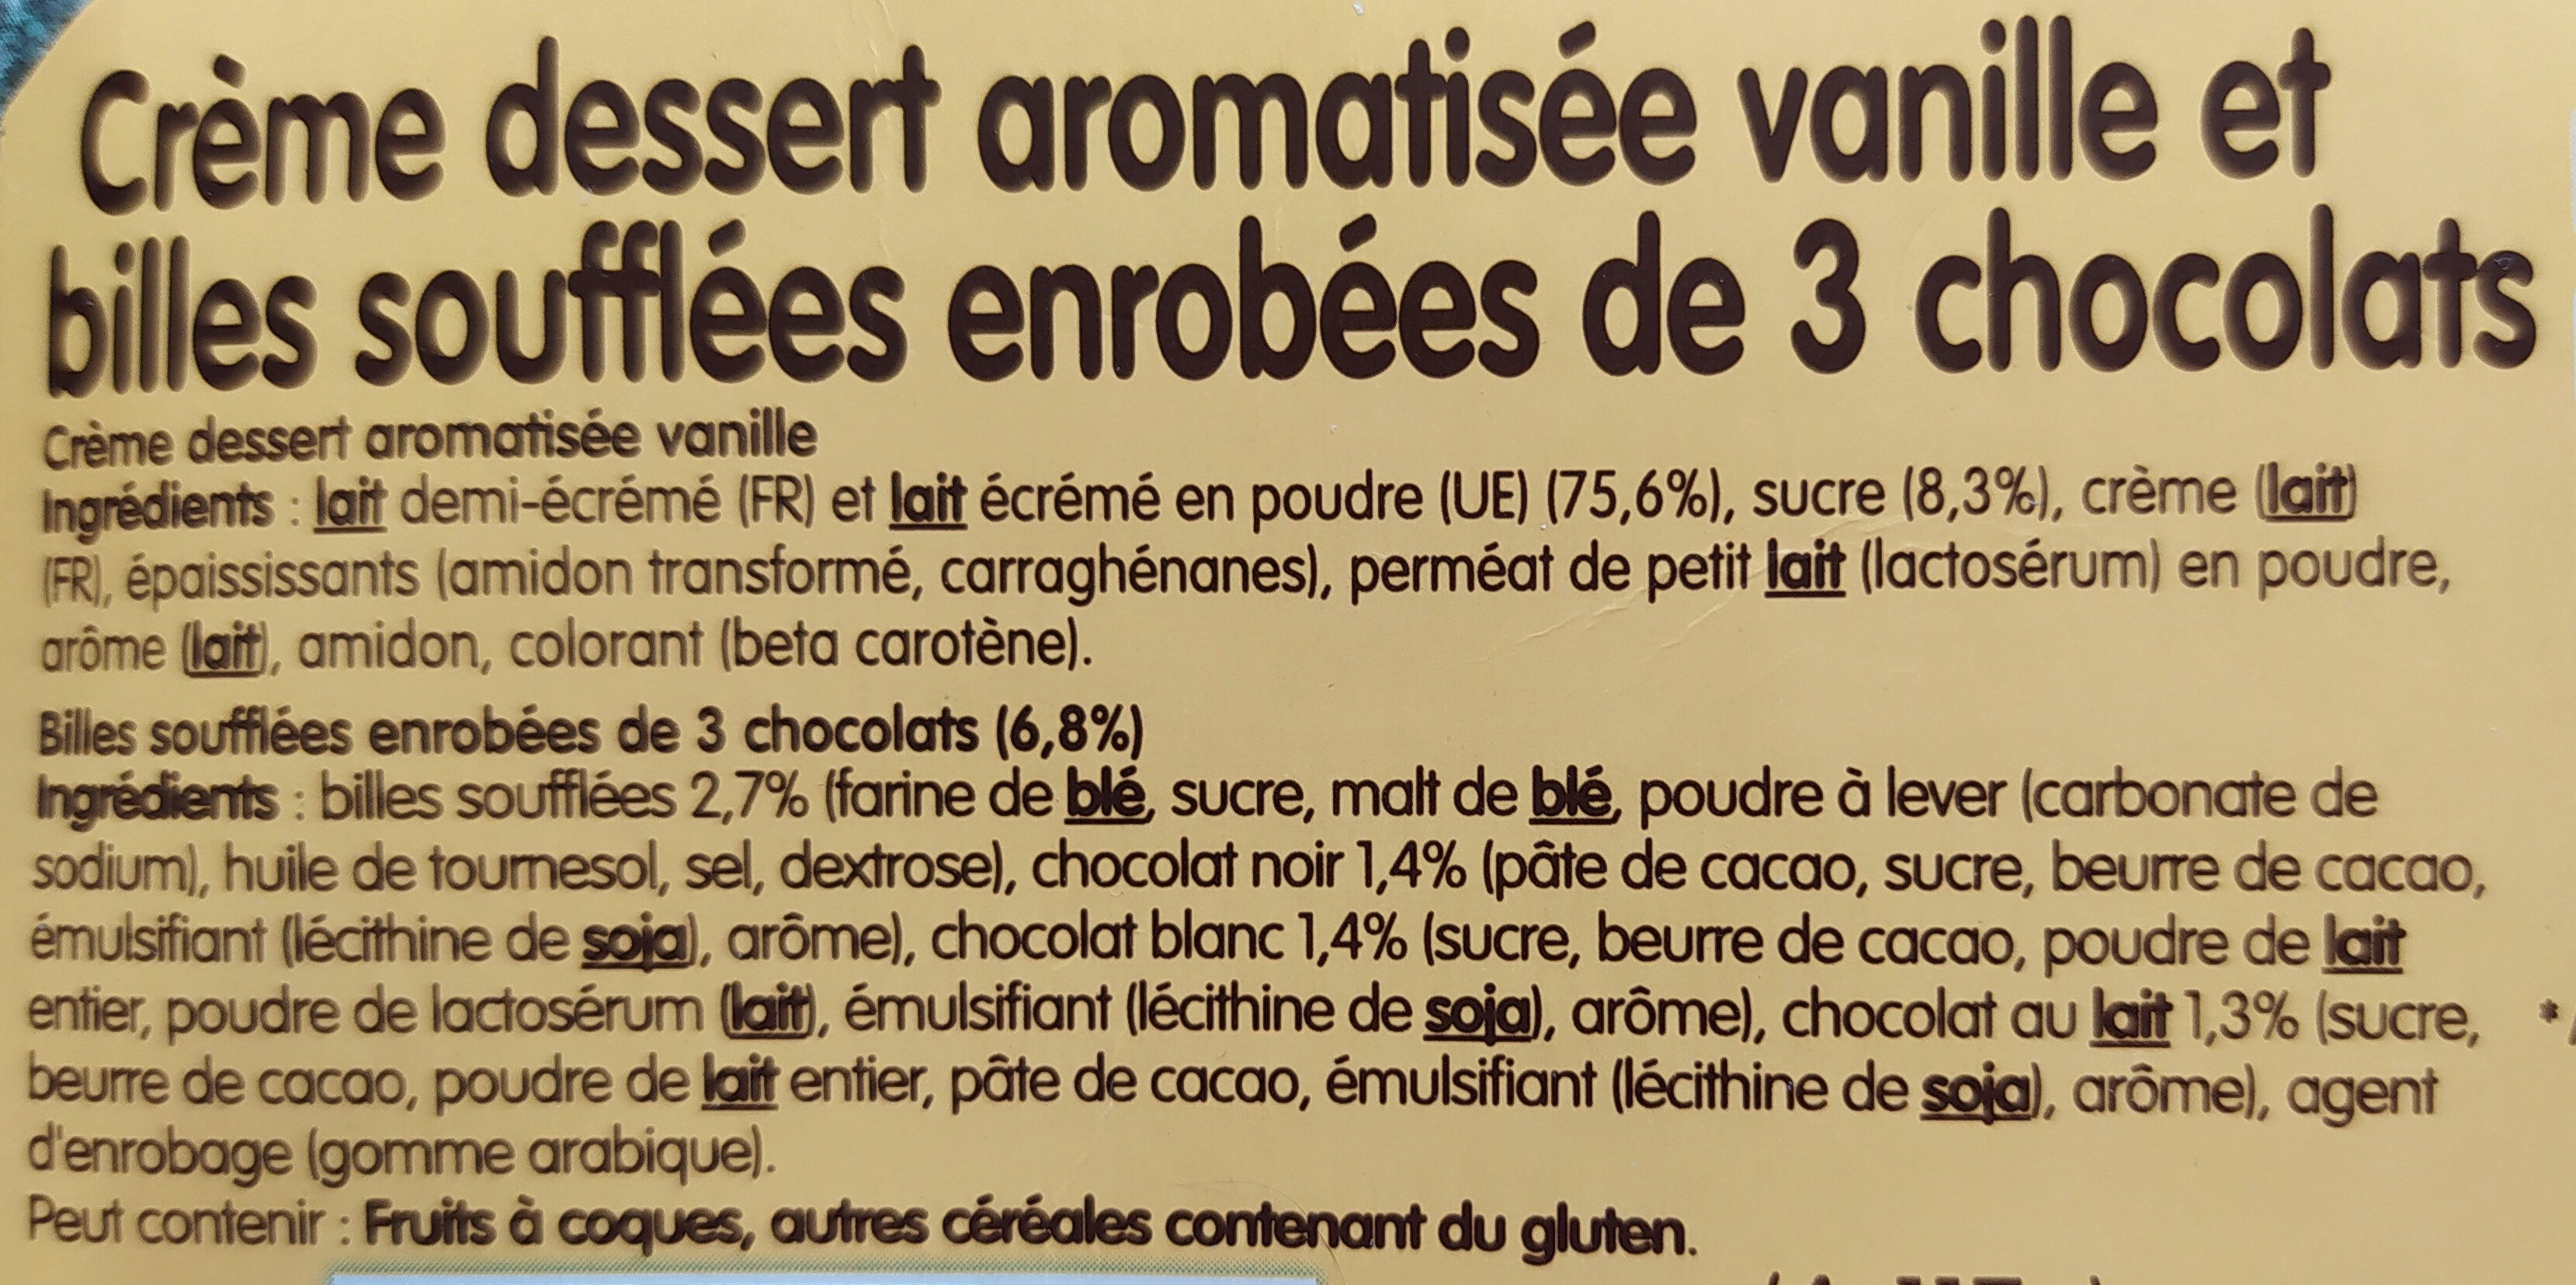 Crème dessert aromatisée vanille et billes soufflées enrobées de 3 chocolats - Ingrédients